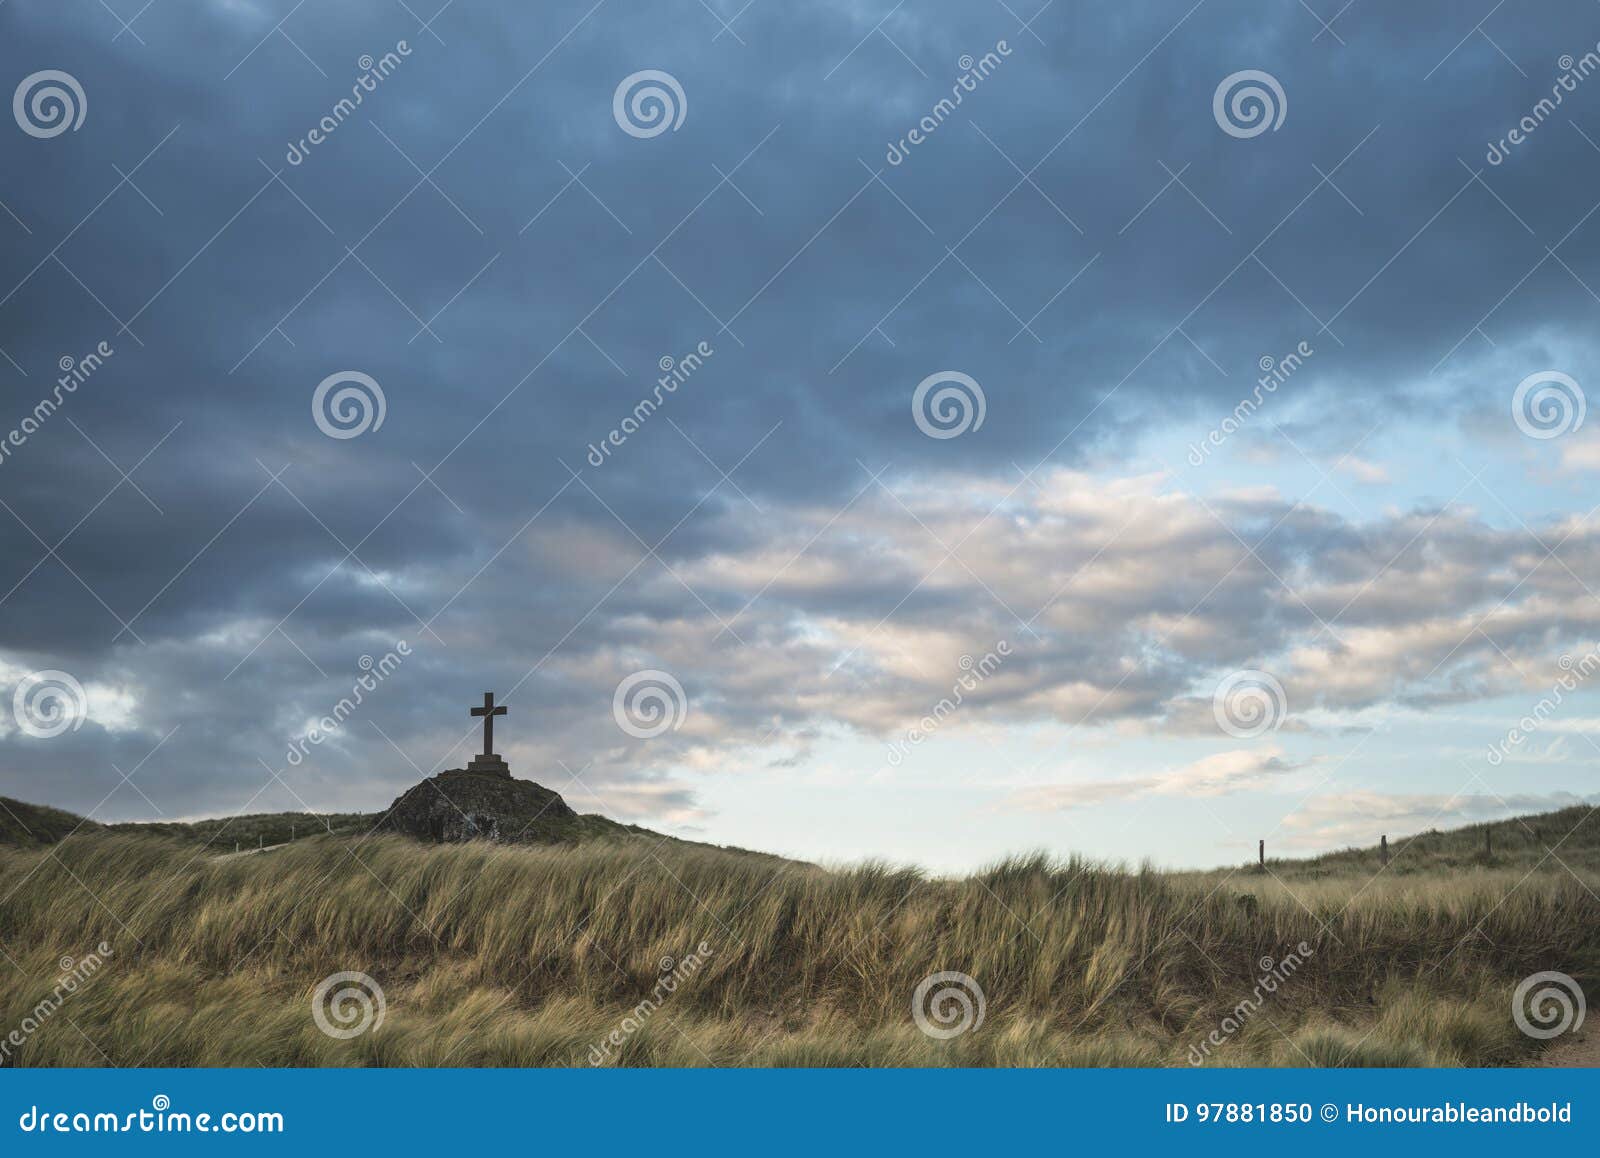 cross in landscape of ynys llanddwyn island at sunset with moody